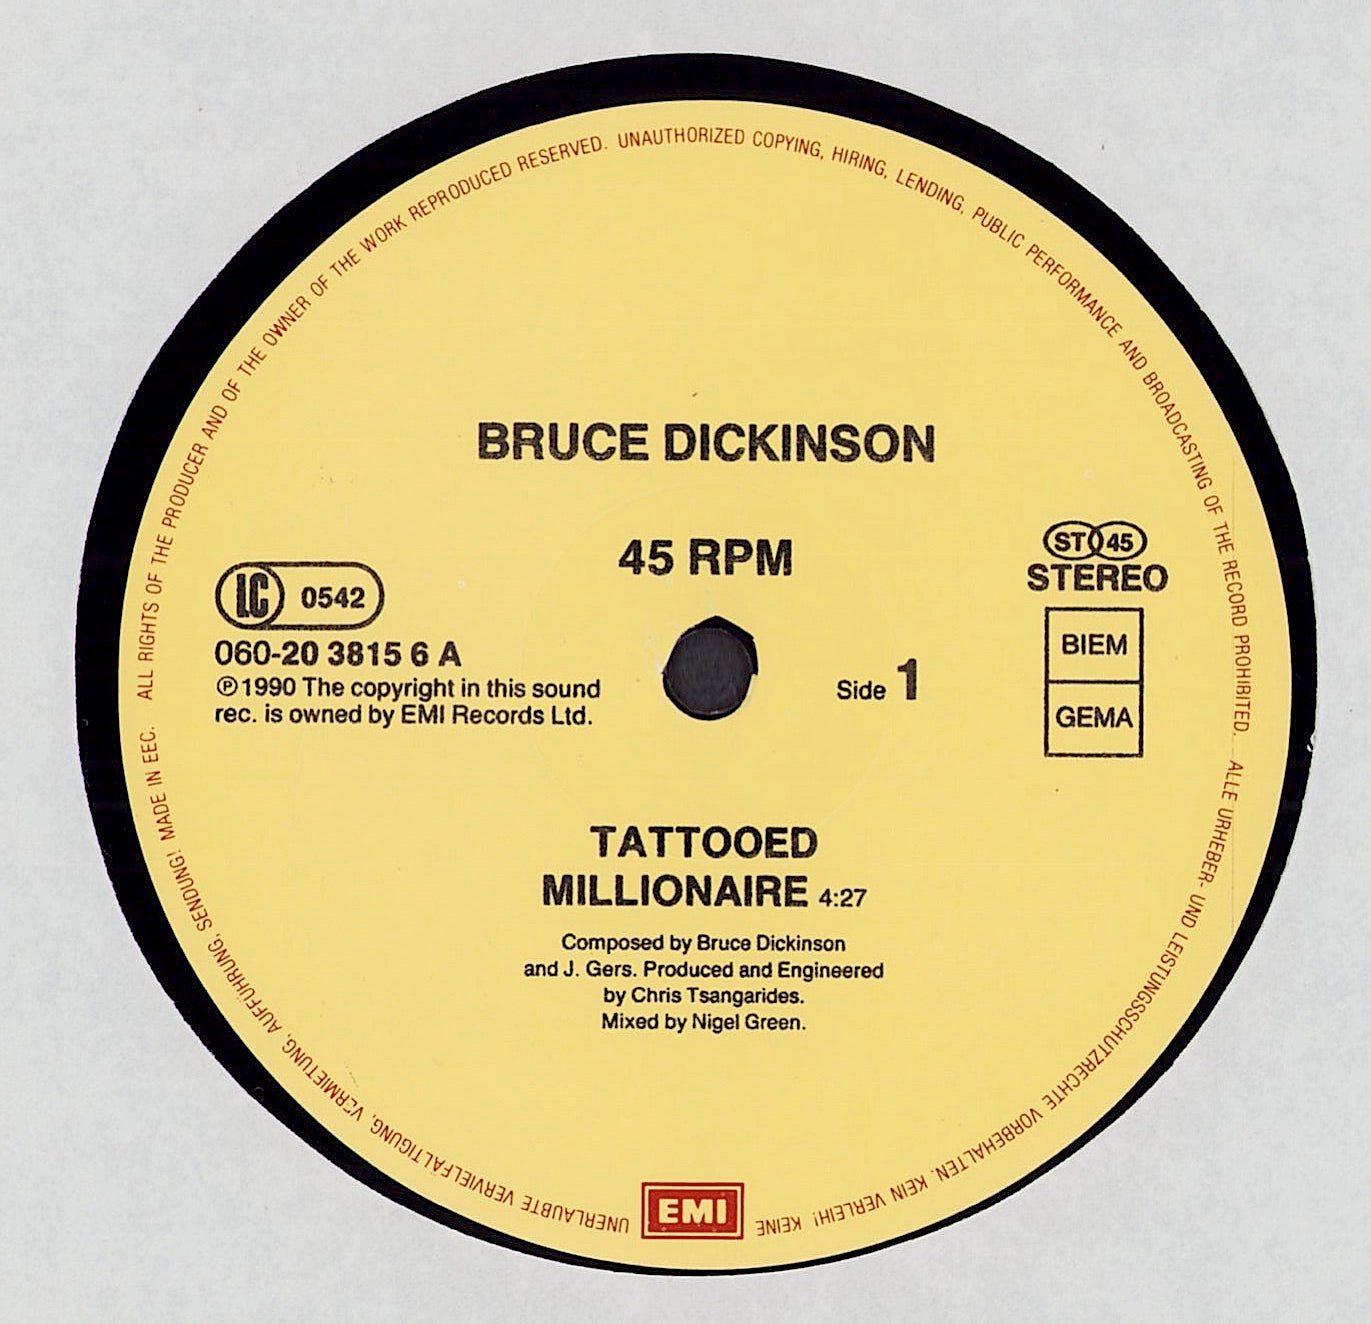 Bruce Dickinson - Tattooed Millionaire Vinyl 12"